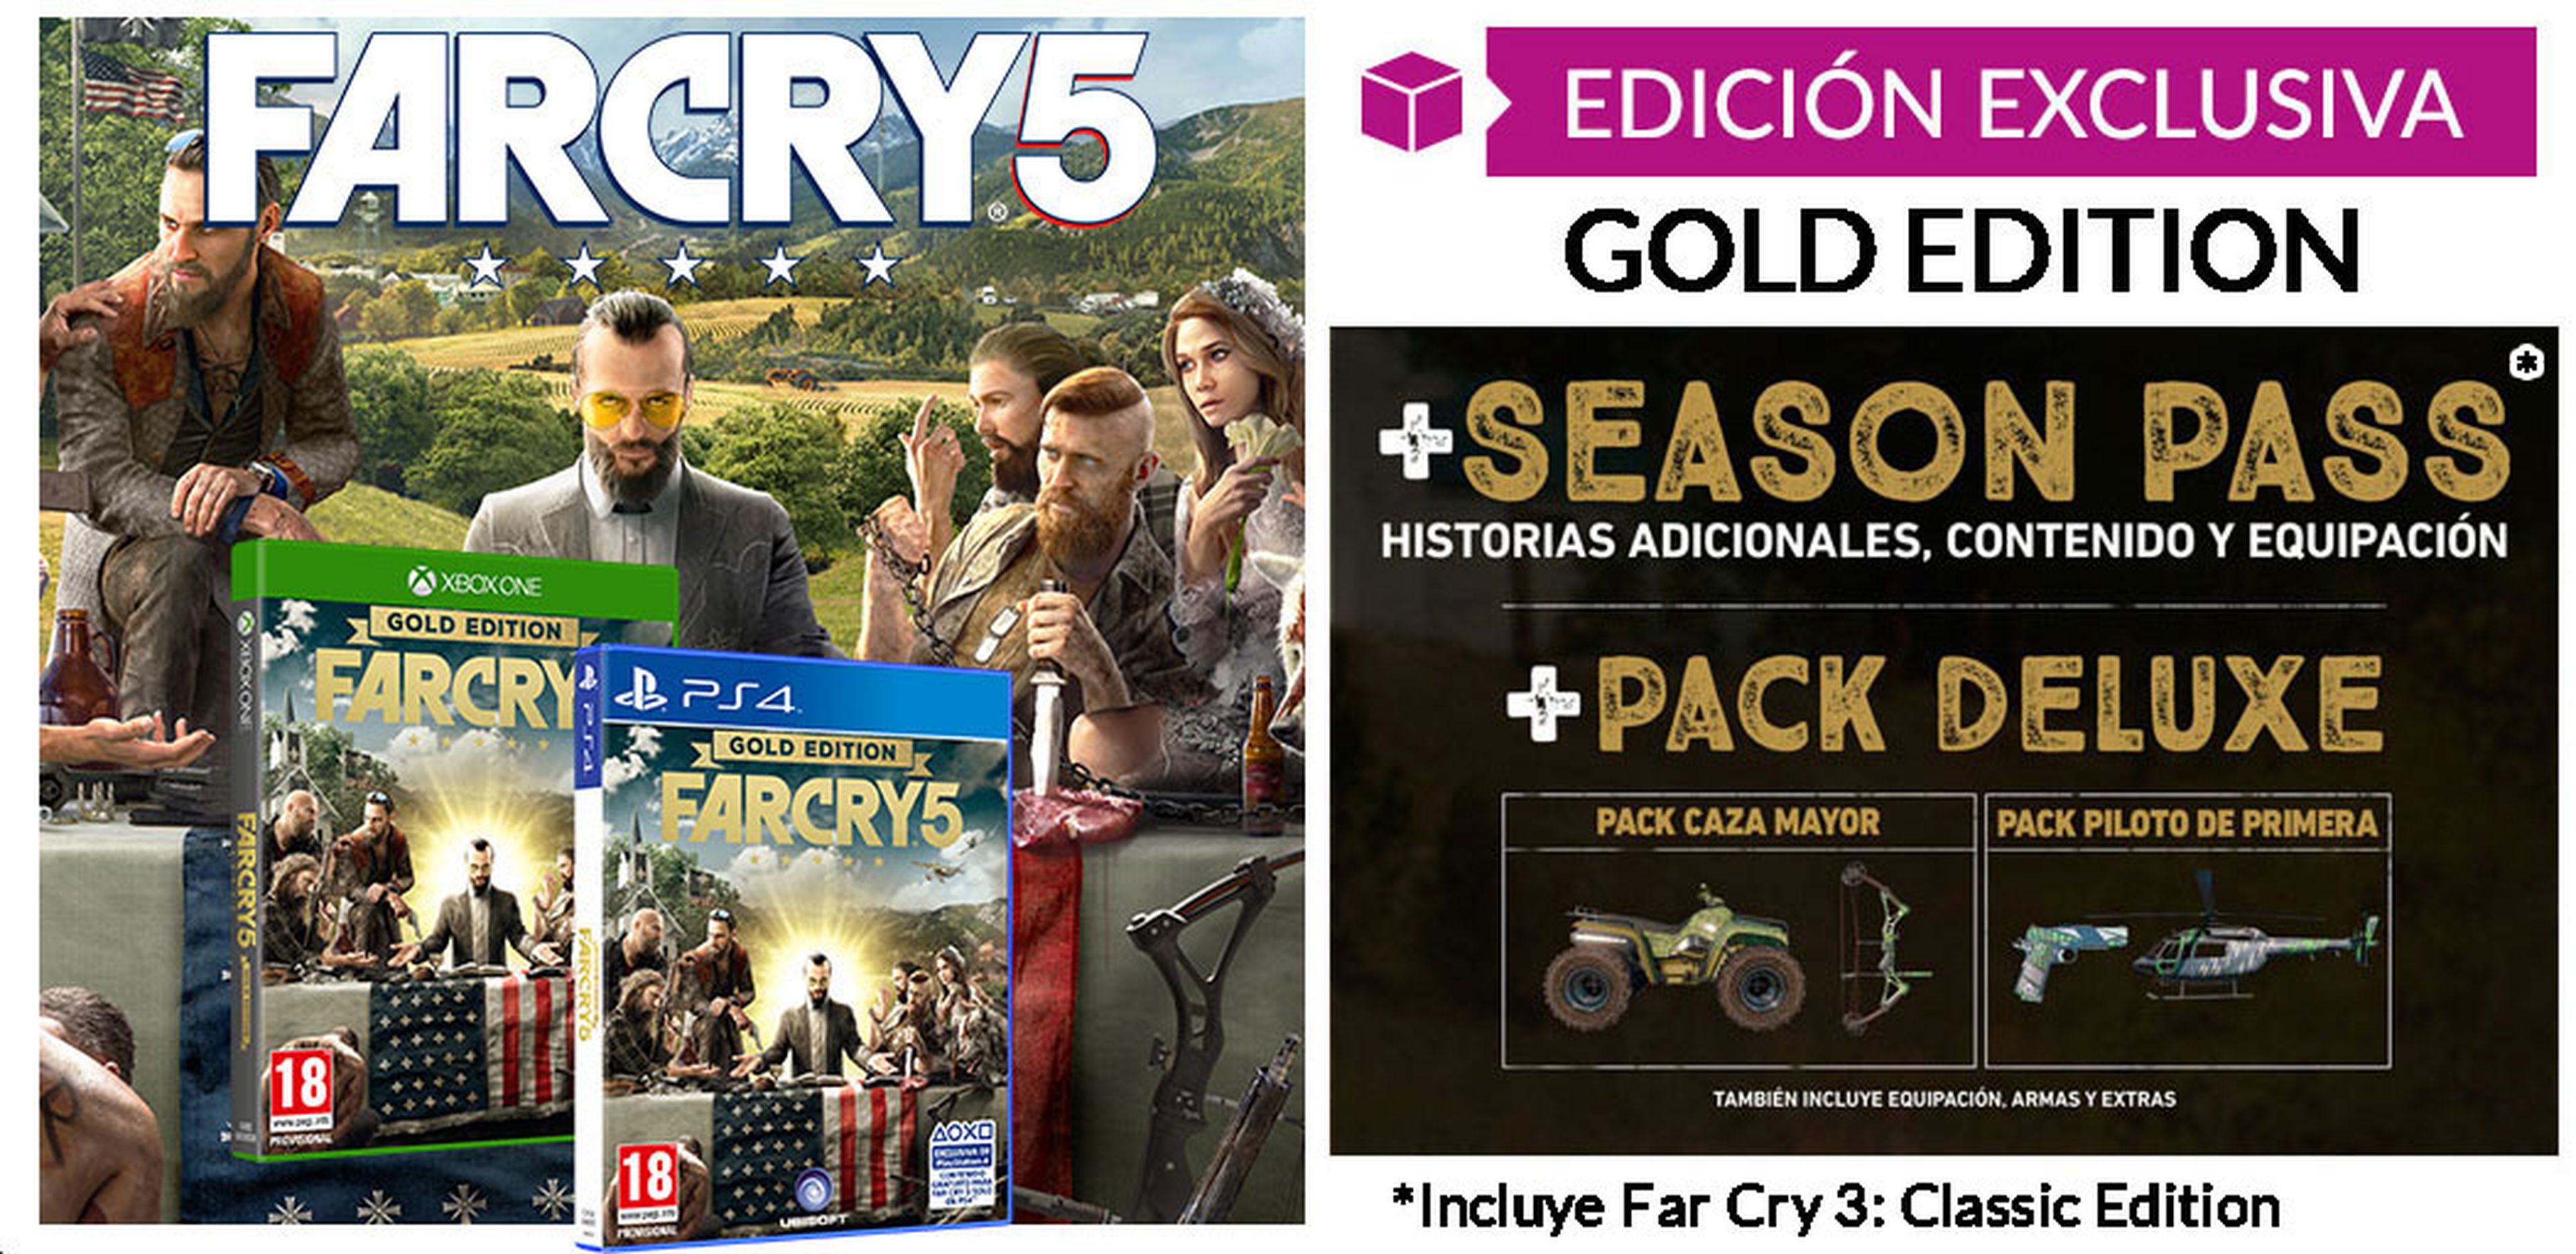 Far cry 5 Gold Edition en GAME